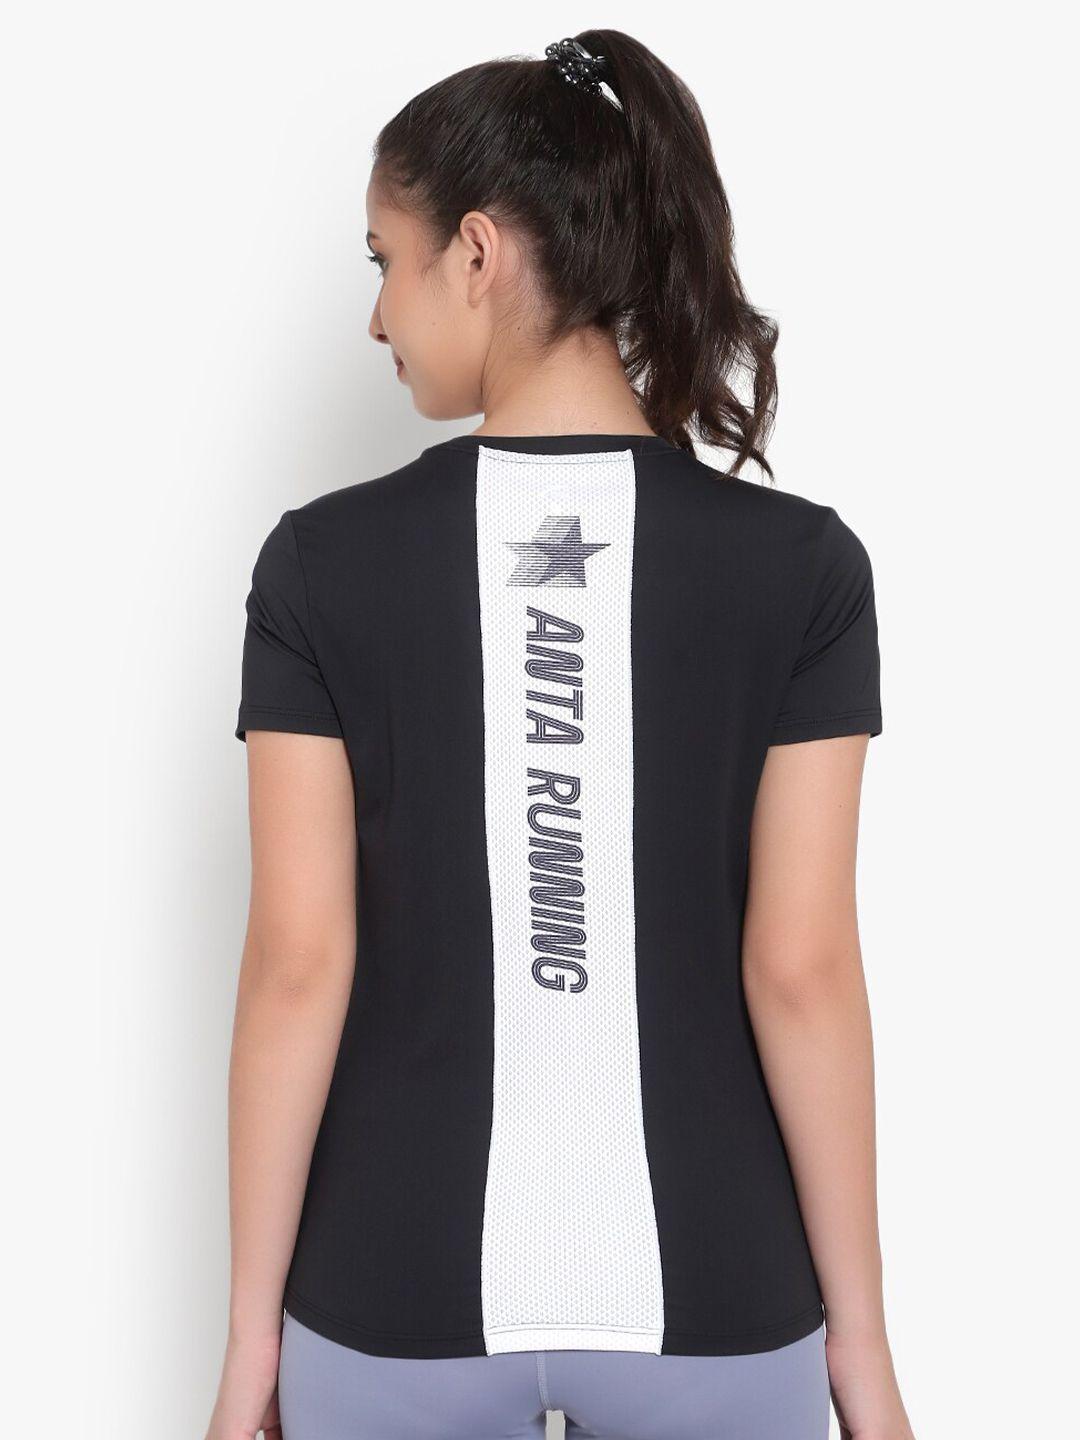 anta women black typography printed t-shirt